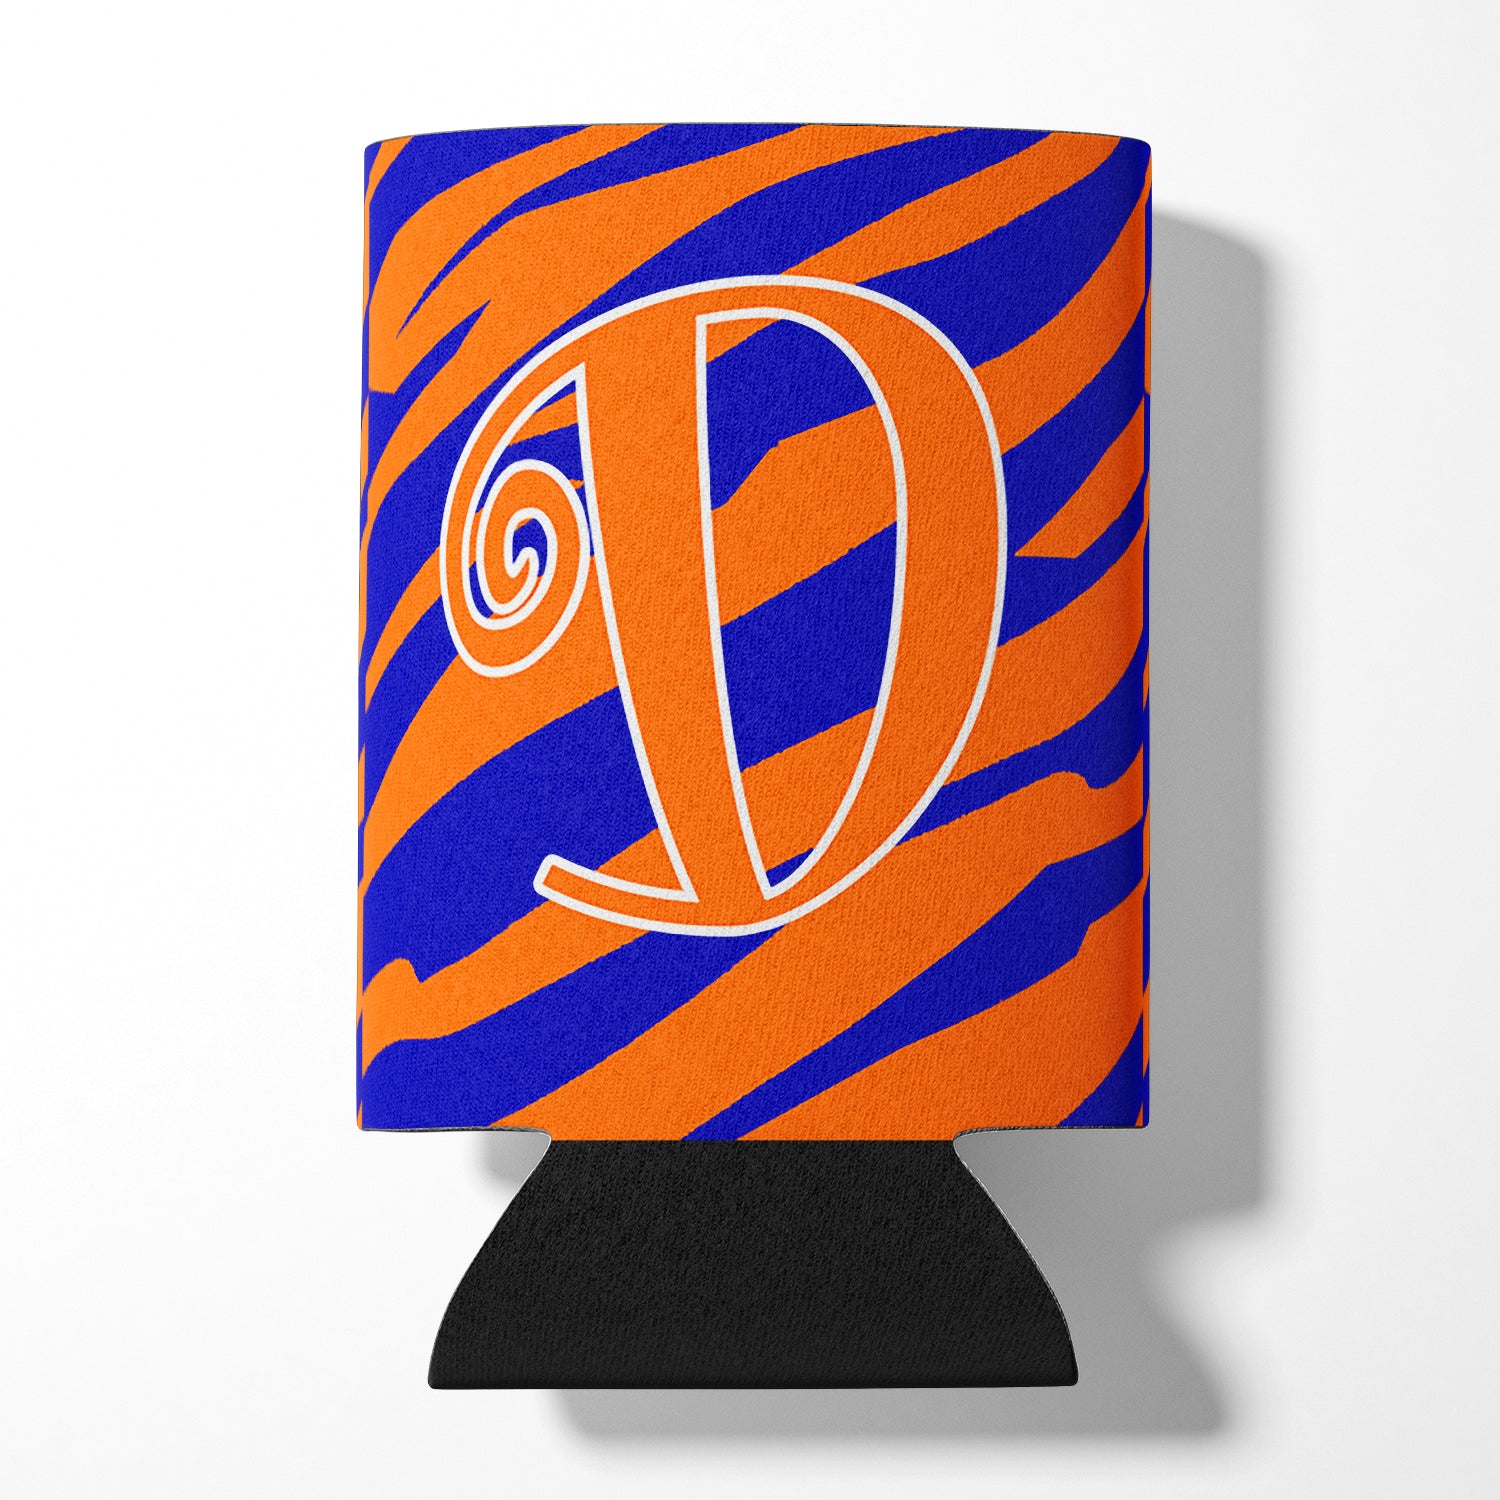 Monogramme initial de la lettre D - Tiger Stripe Blue and Orange Can Beverage Insulator Hugger